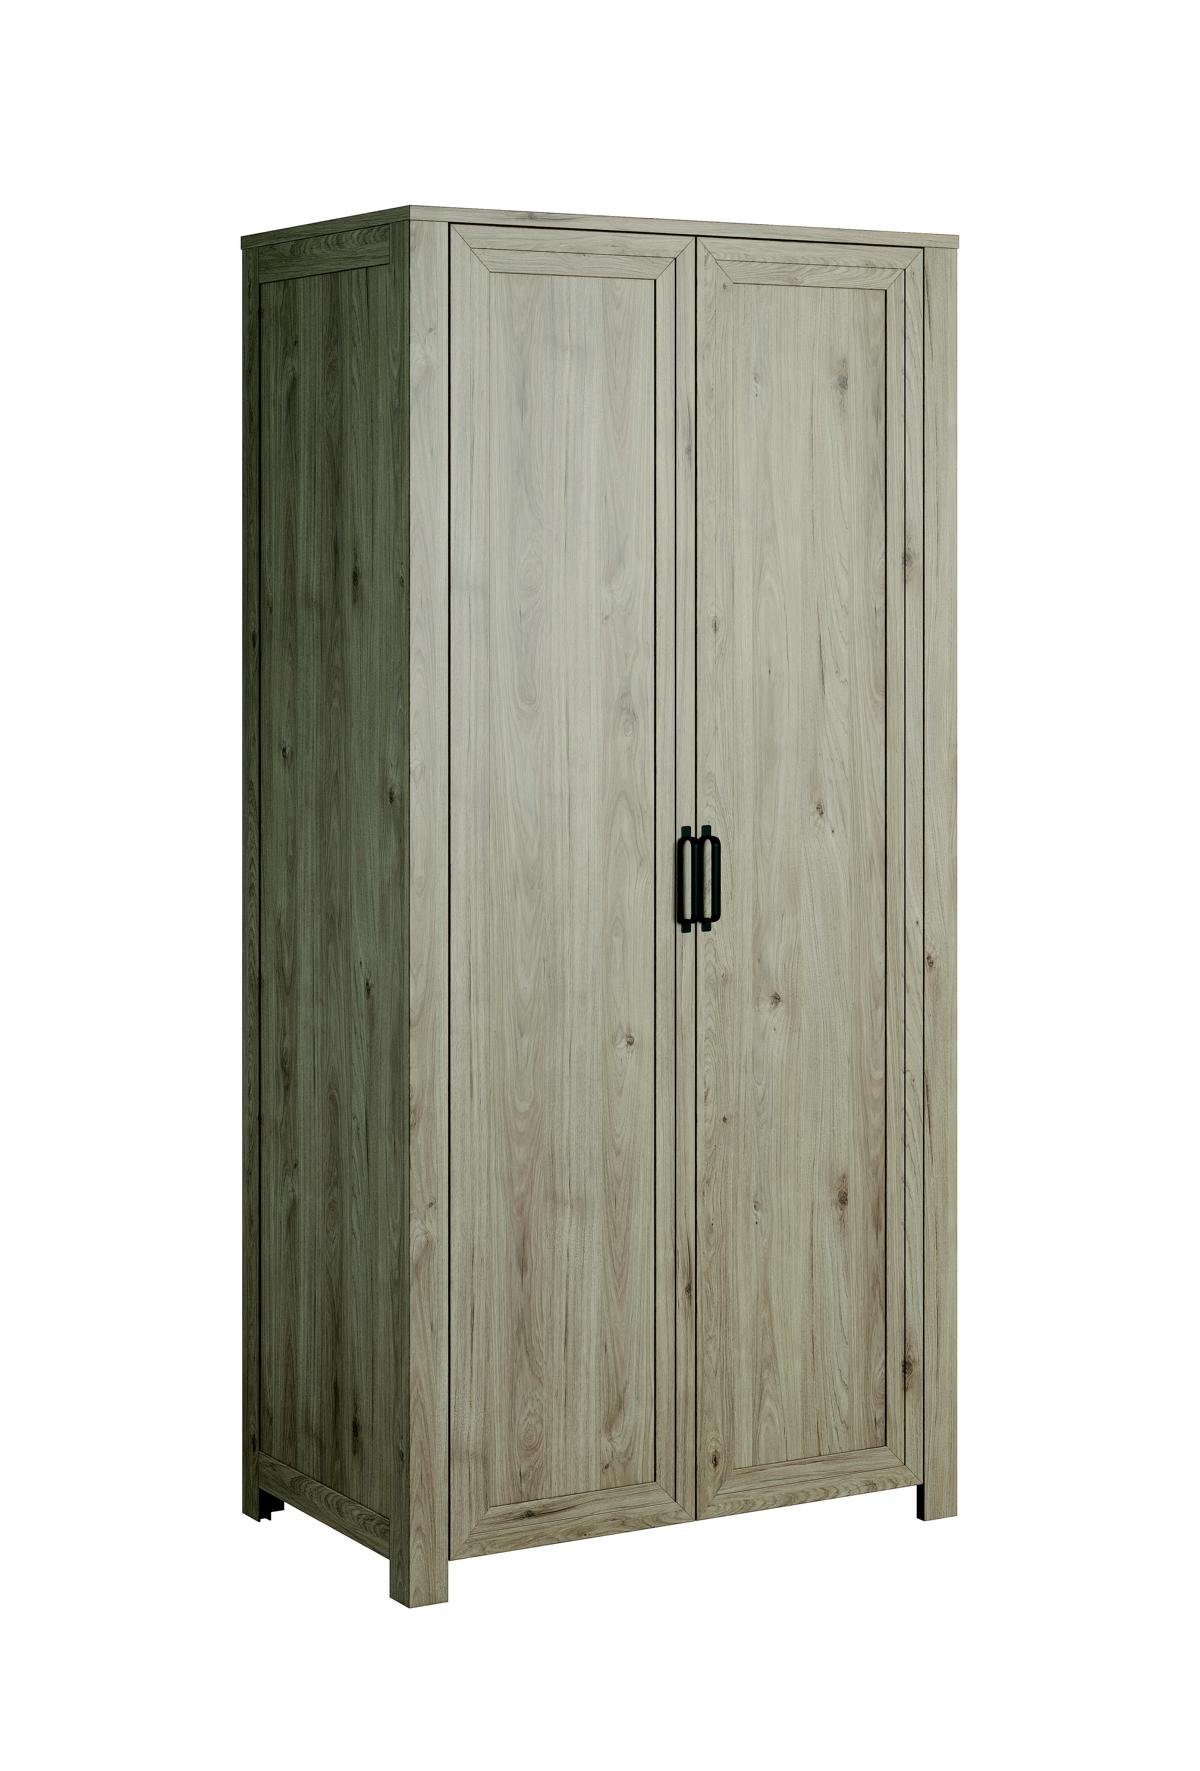 JVmoebel Kleiderschrank Schlafzimmer Klassischer Modern Stil Kleiderschrank Wohnzimmer Holz Garderobe